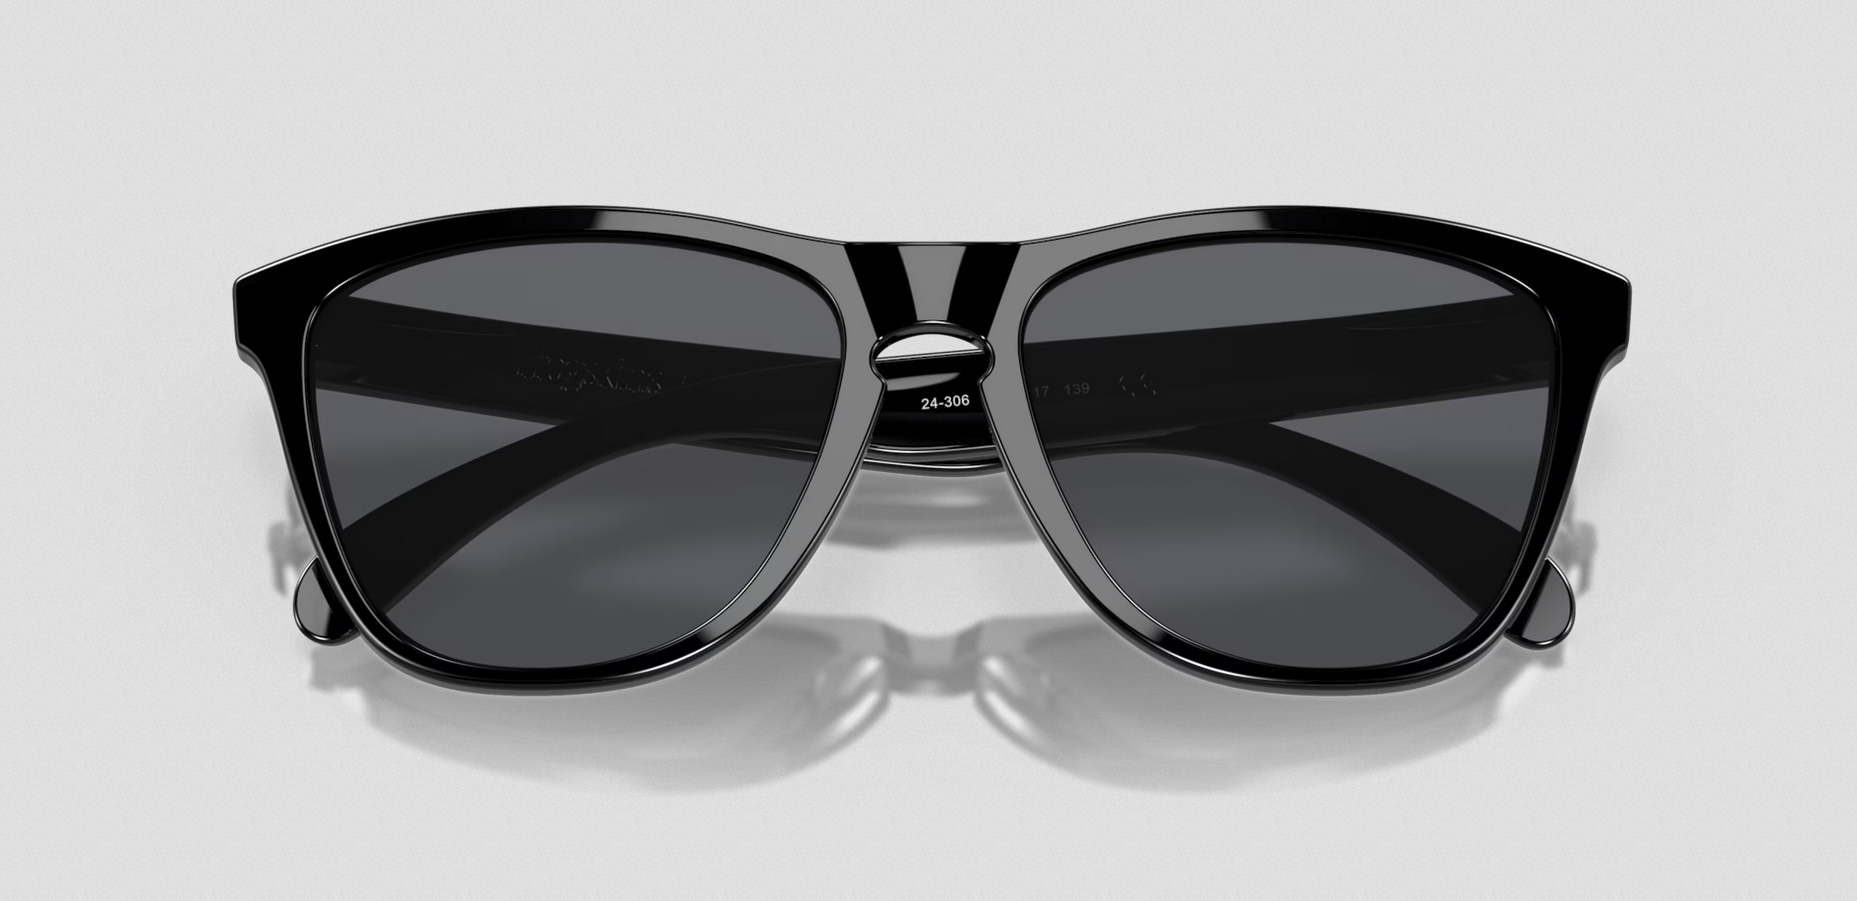 Oakley Frogskins - Polished Black Sunglasses